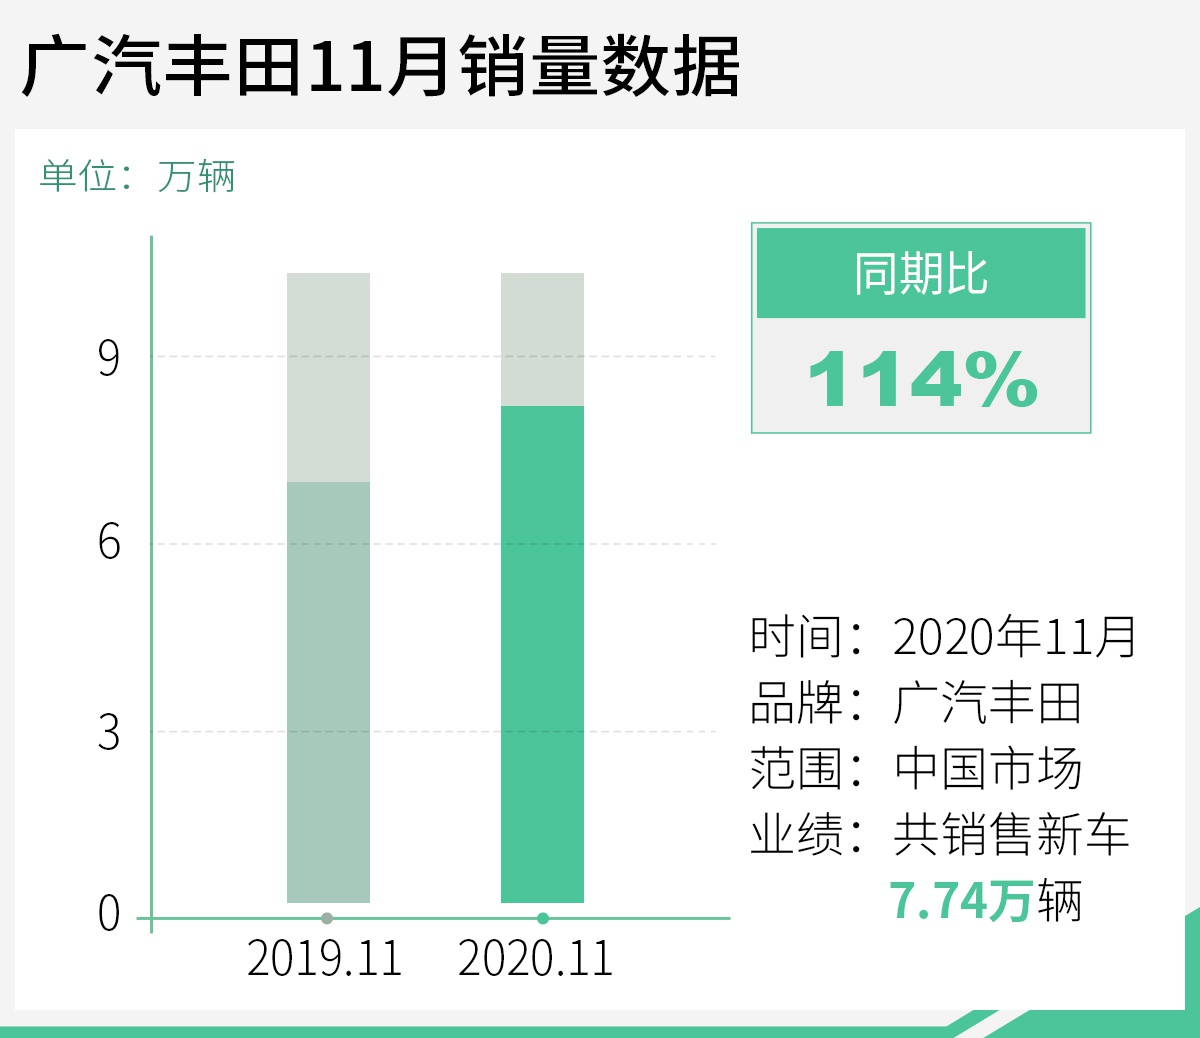 同比增长14% 广汽丰田11月销量达7.74万辆